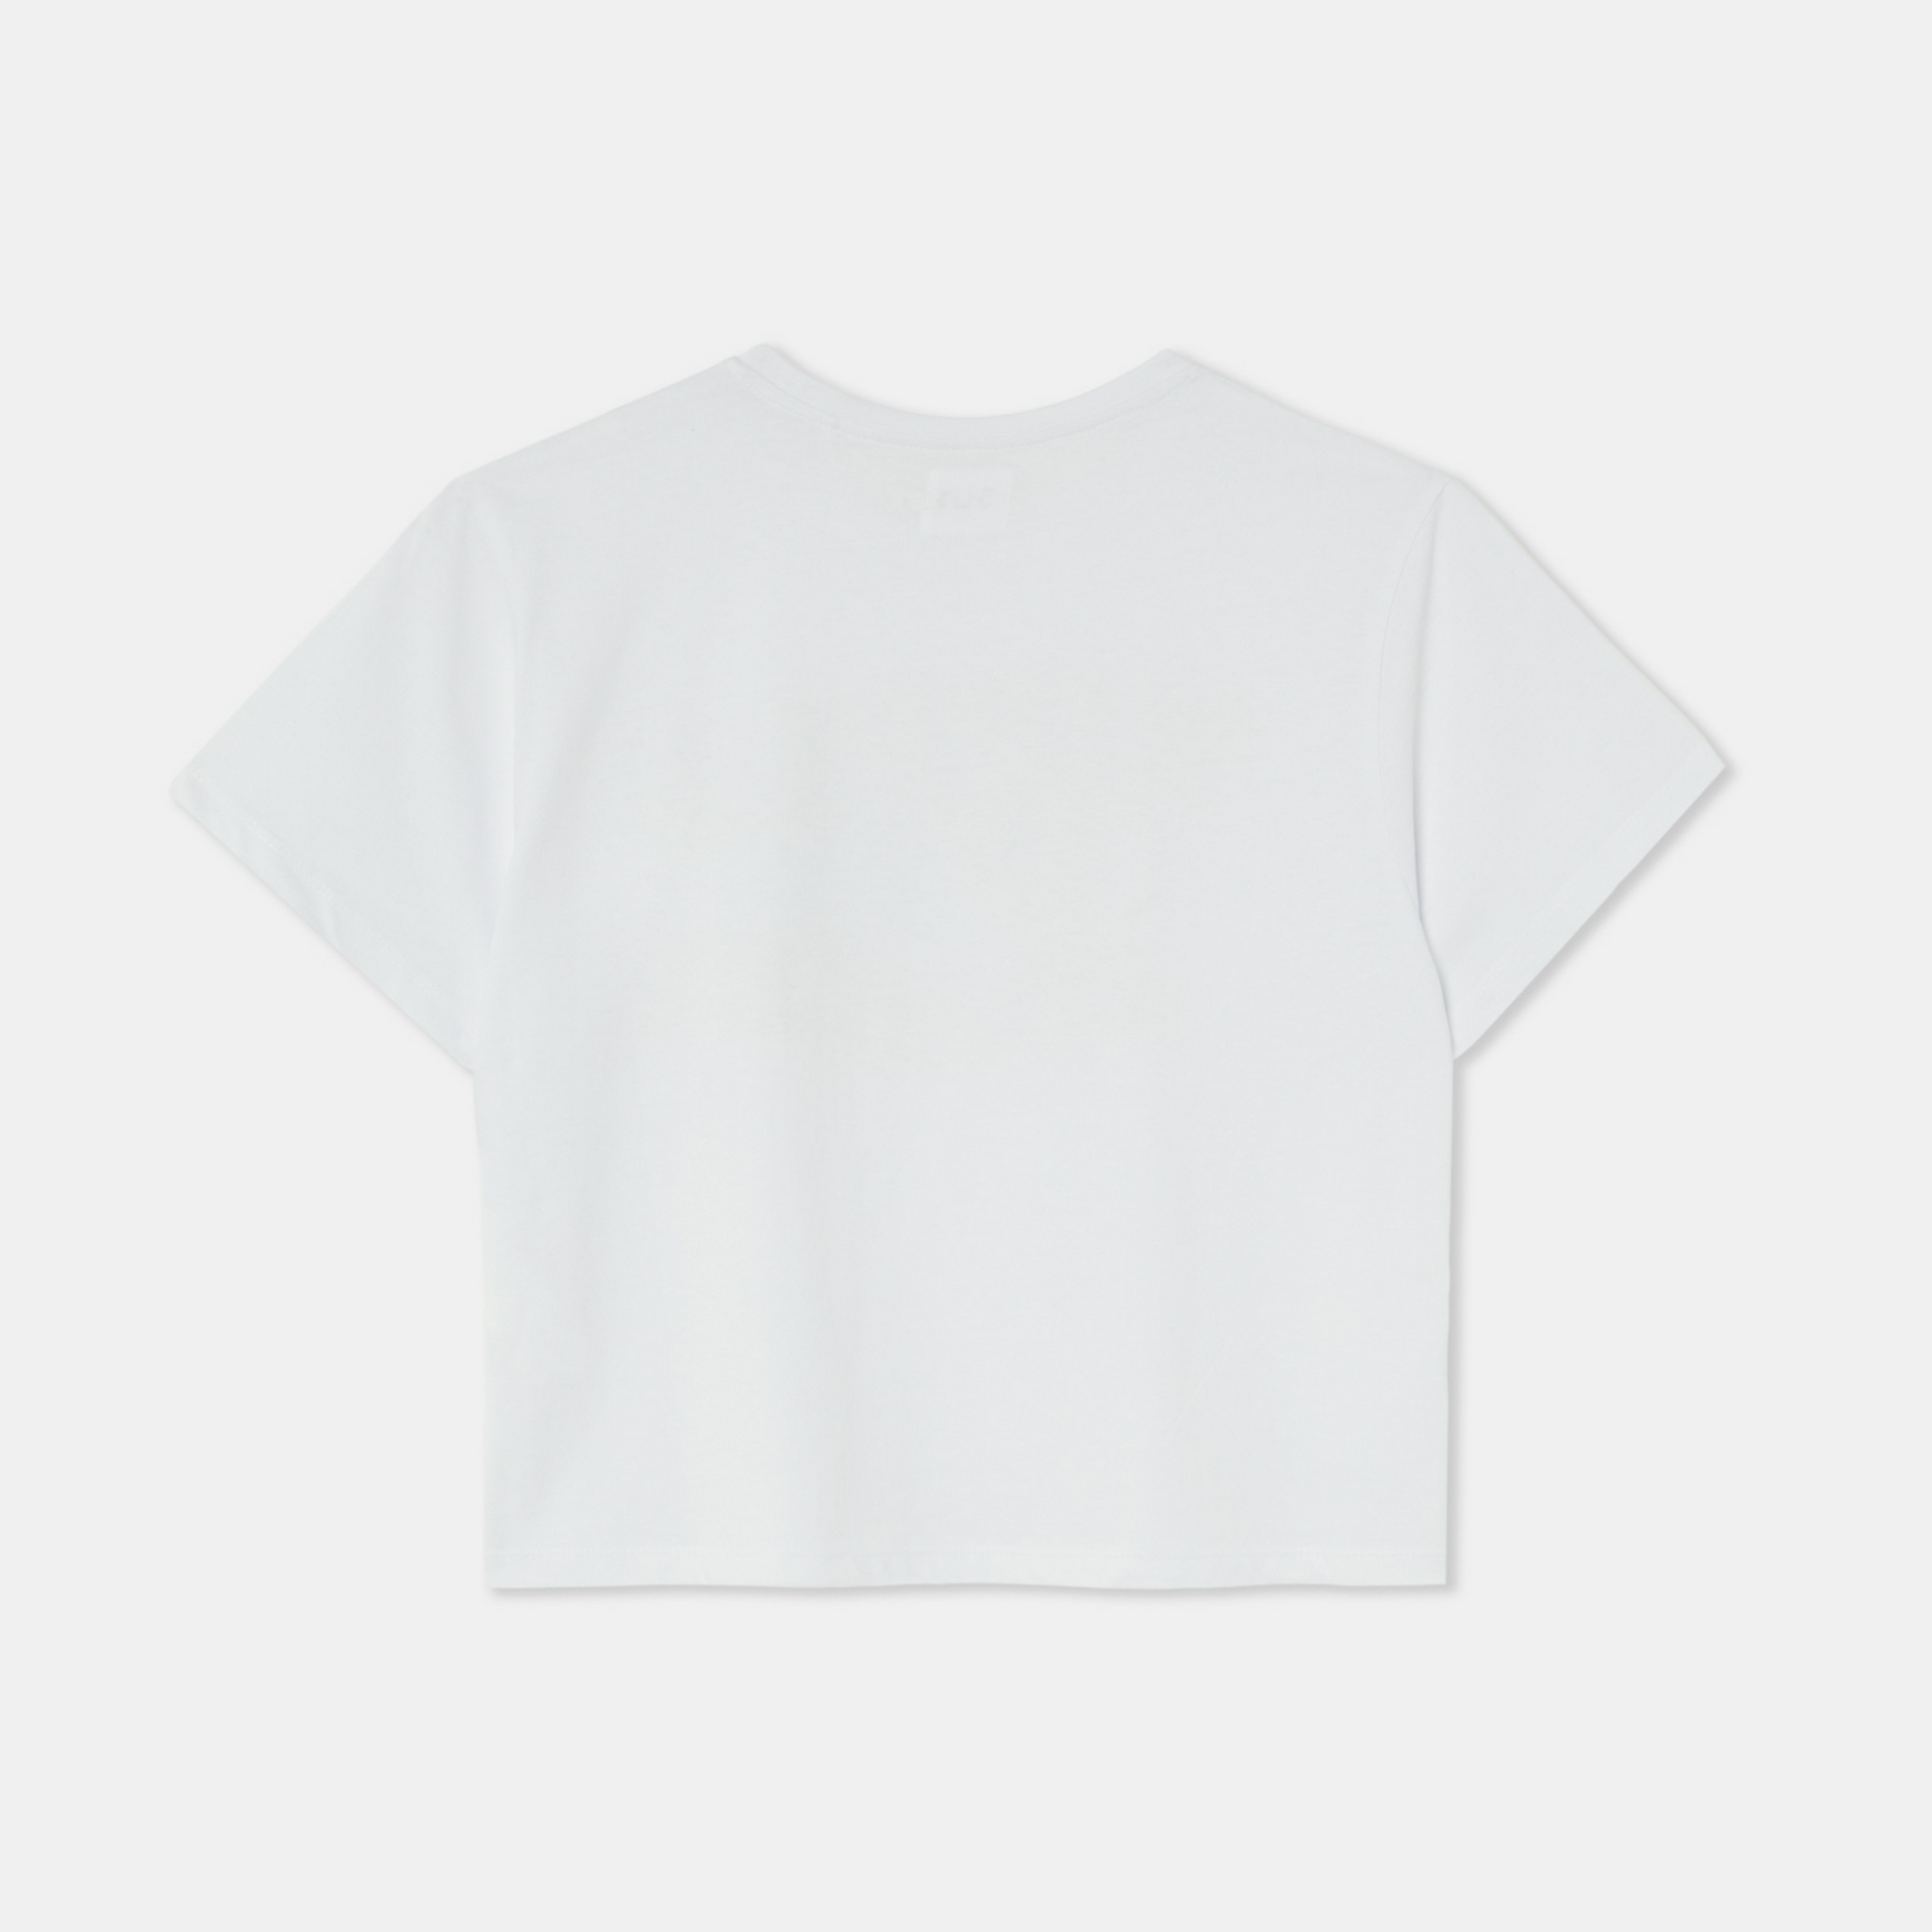 SKATEBOARDER LOVIN' Mid-Crop White T-shirt Cotton –